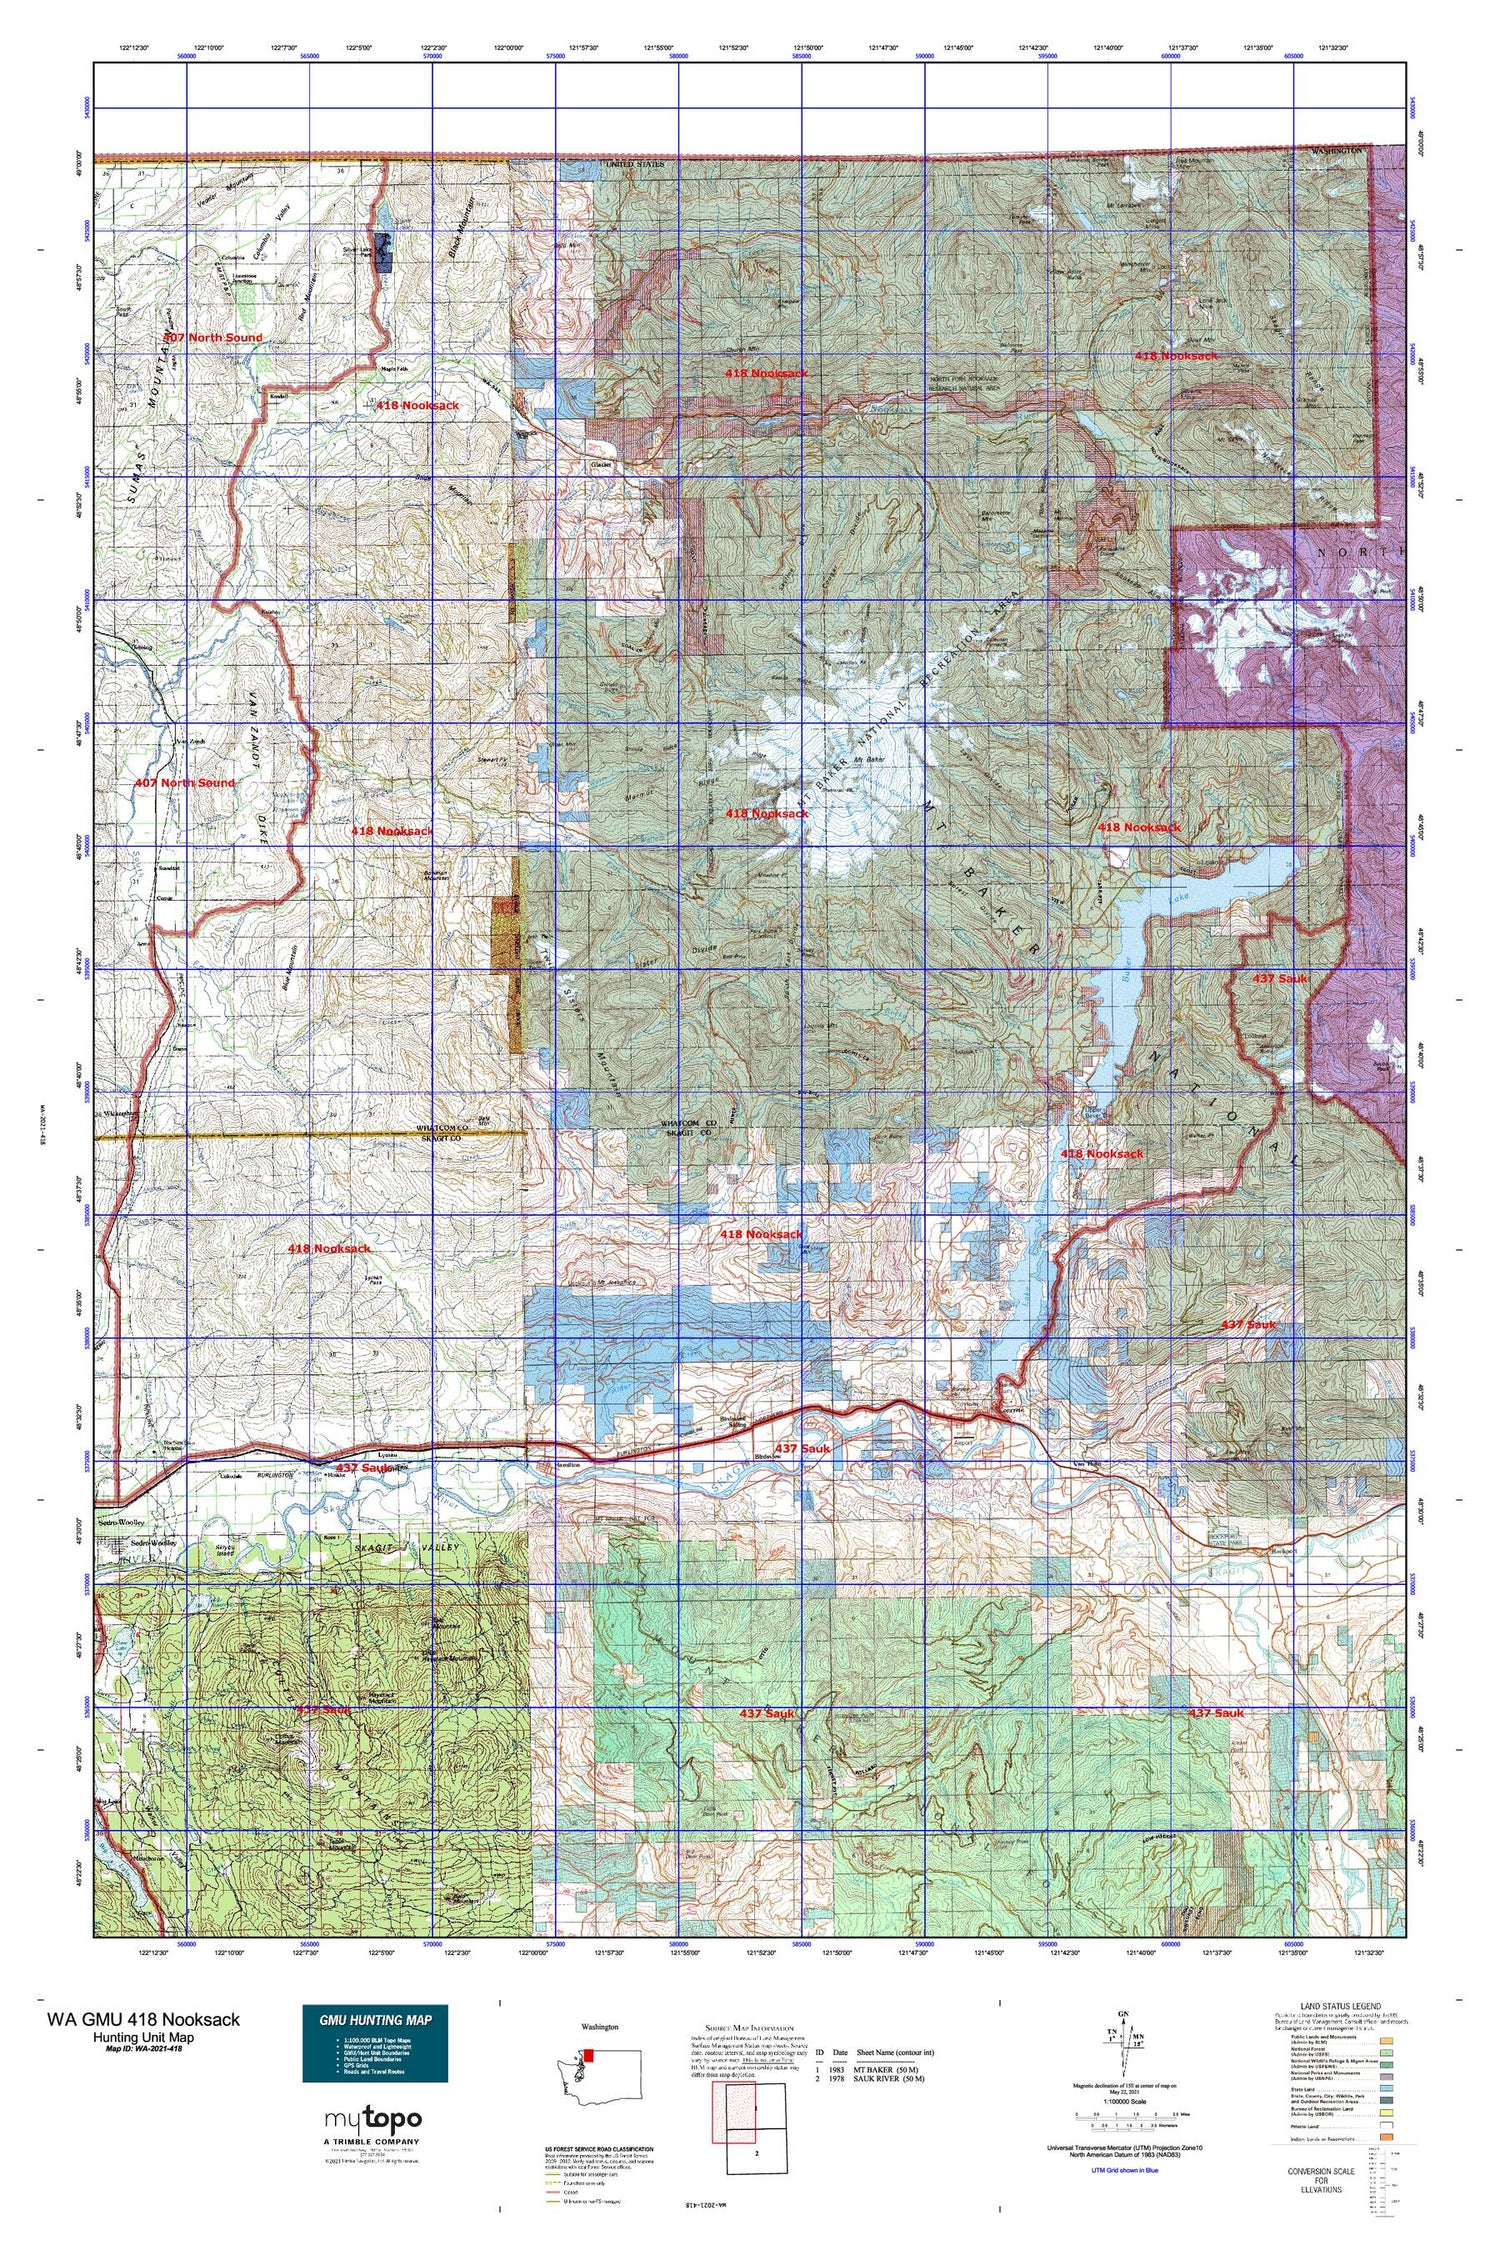 Washington GMU 418 Nooksack Map Image